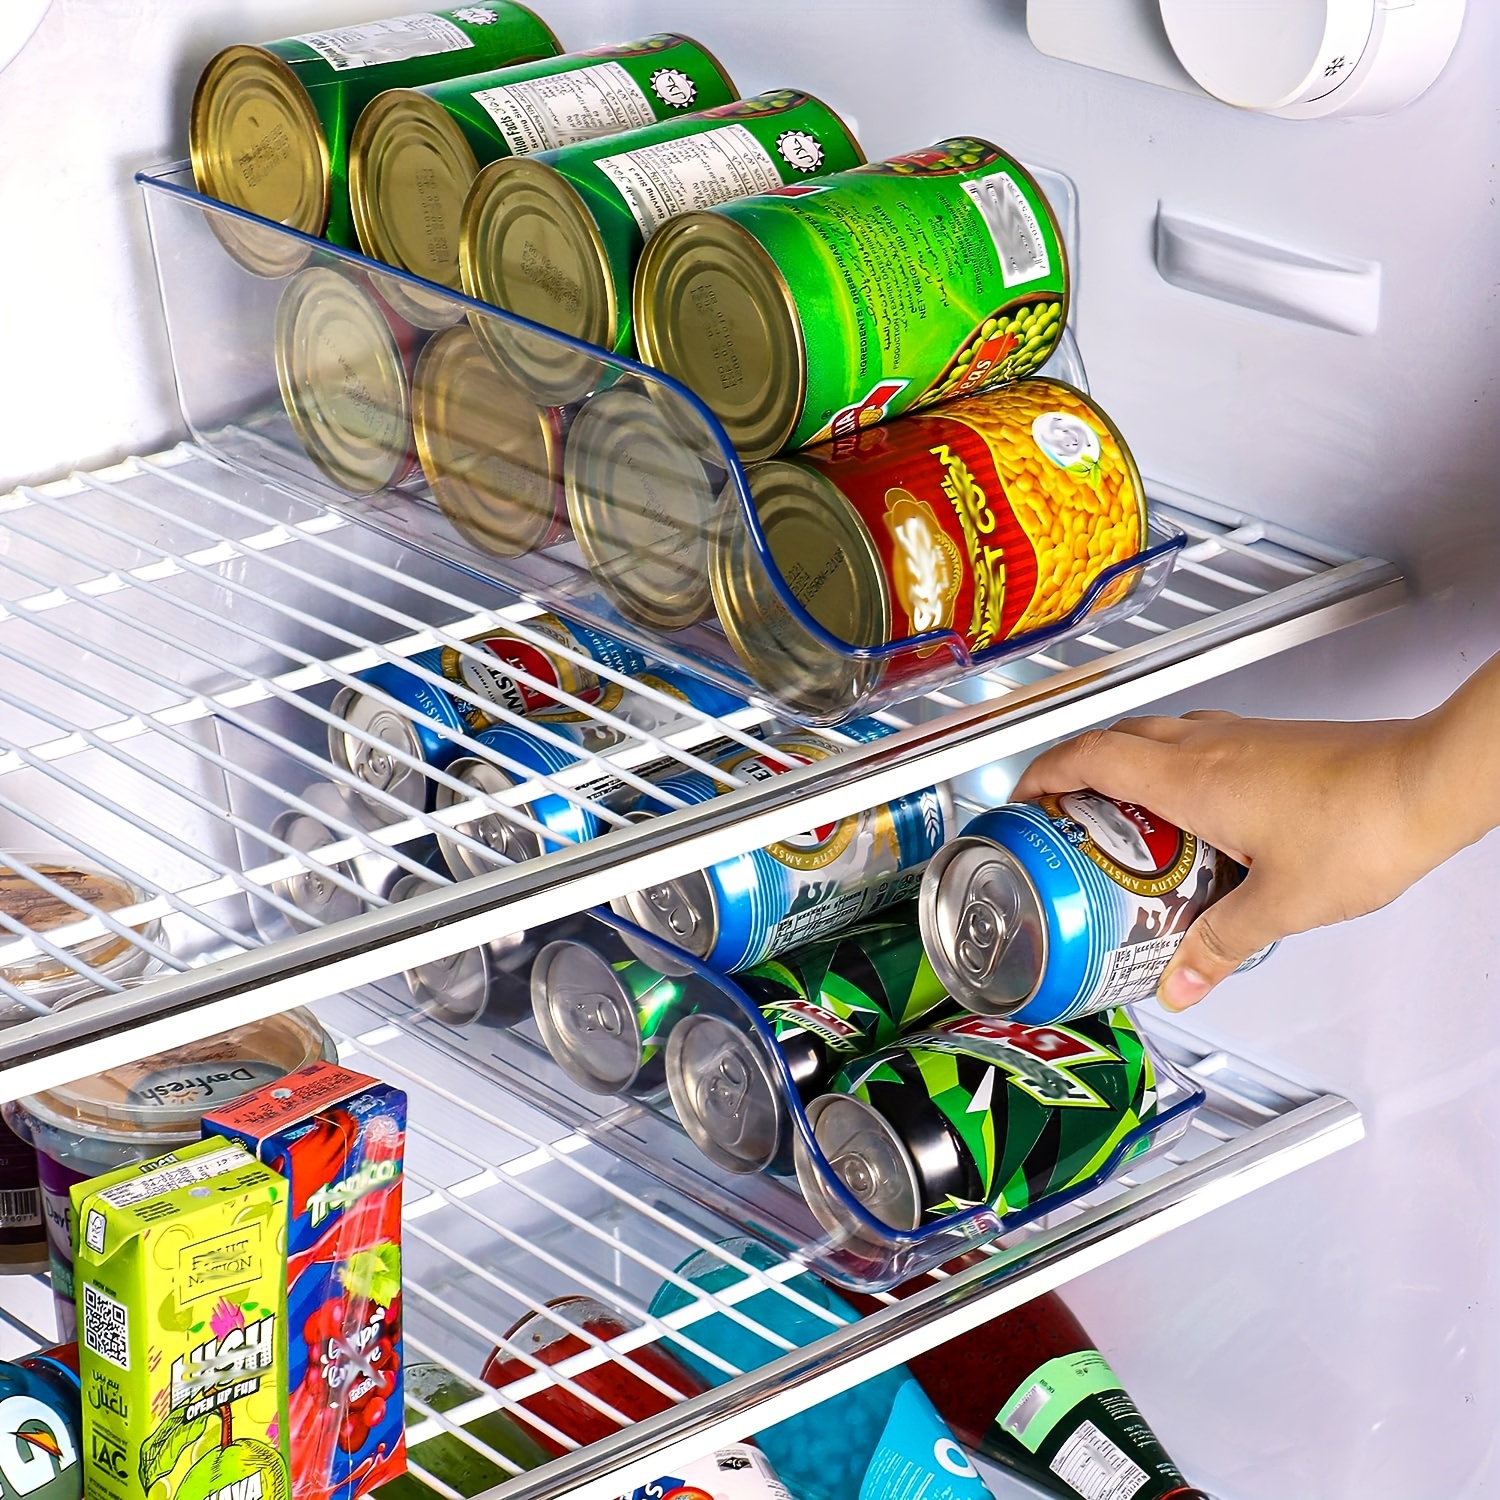 Organizador de refrigerador, contenedores de latas de Soda, soporte para  botellas de bebidas, organizador de despensa, estante de almacenamiento de  cocina, contenedor organizador latas nevera dispensador latas nevera -  AliExpress